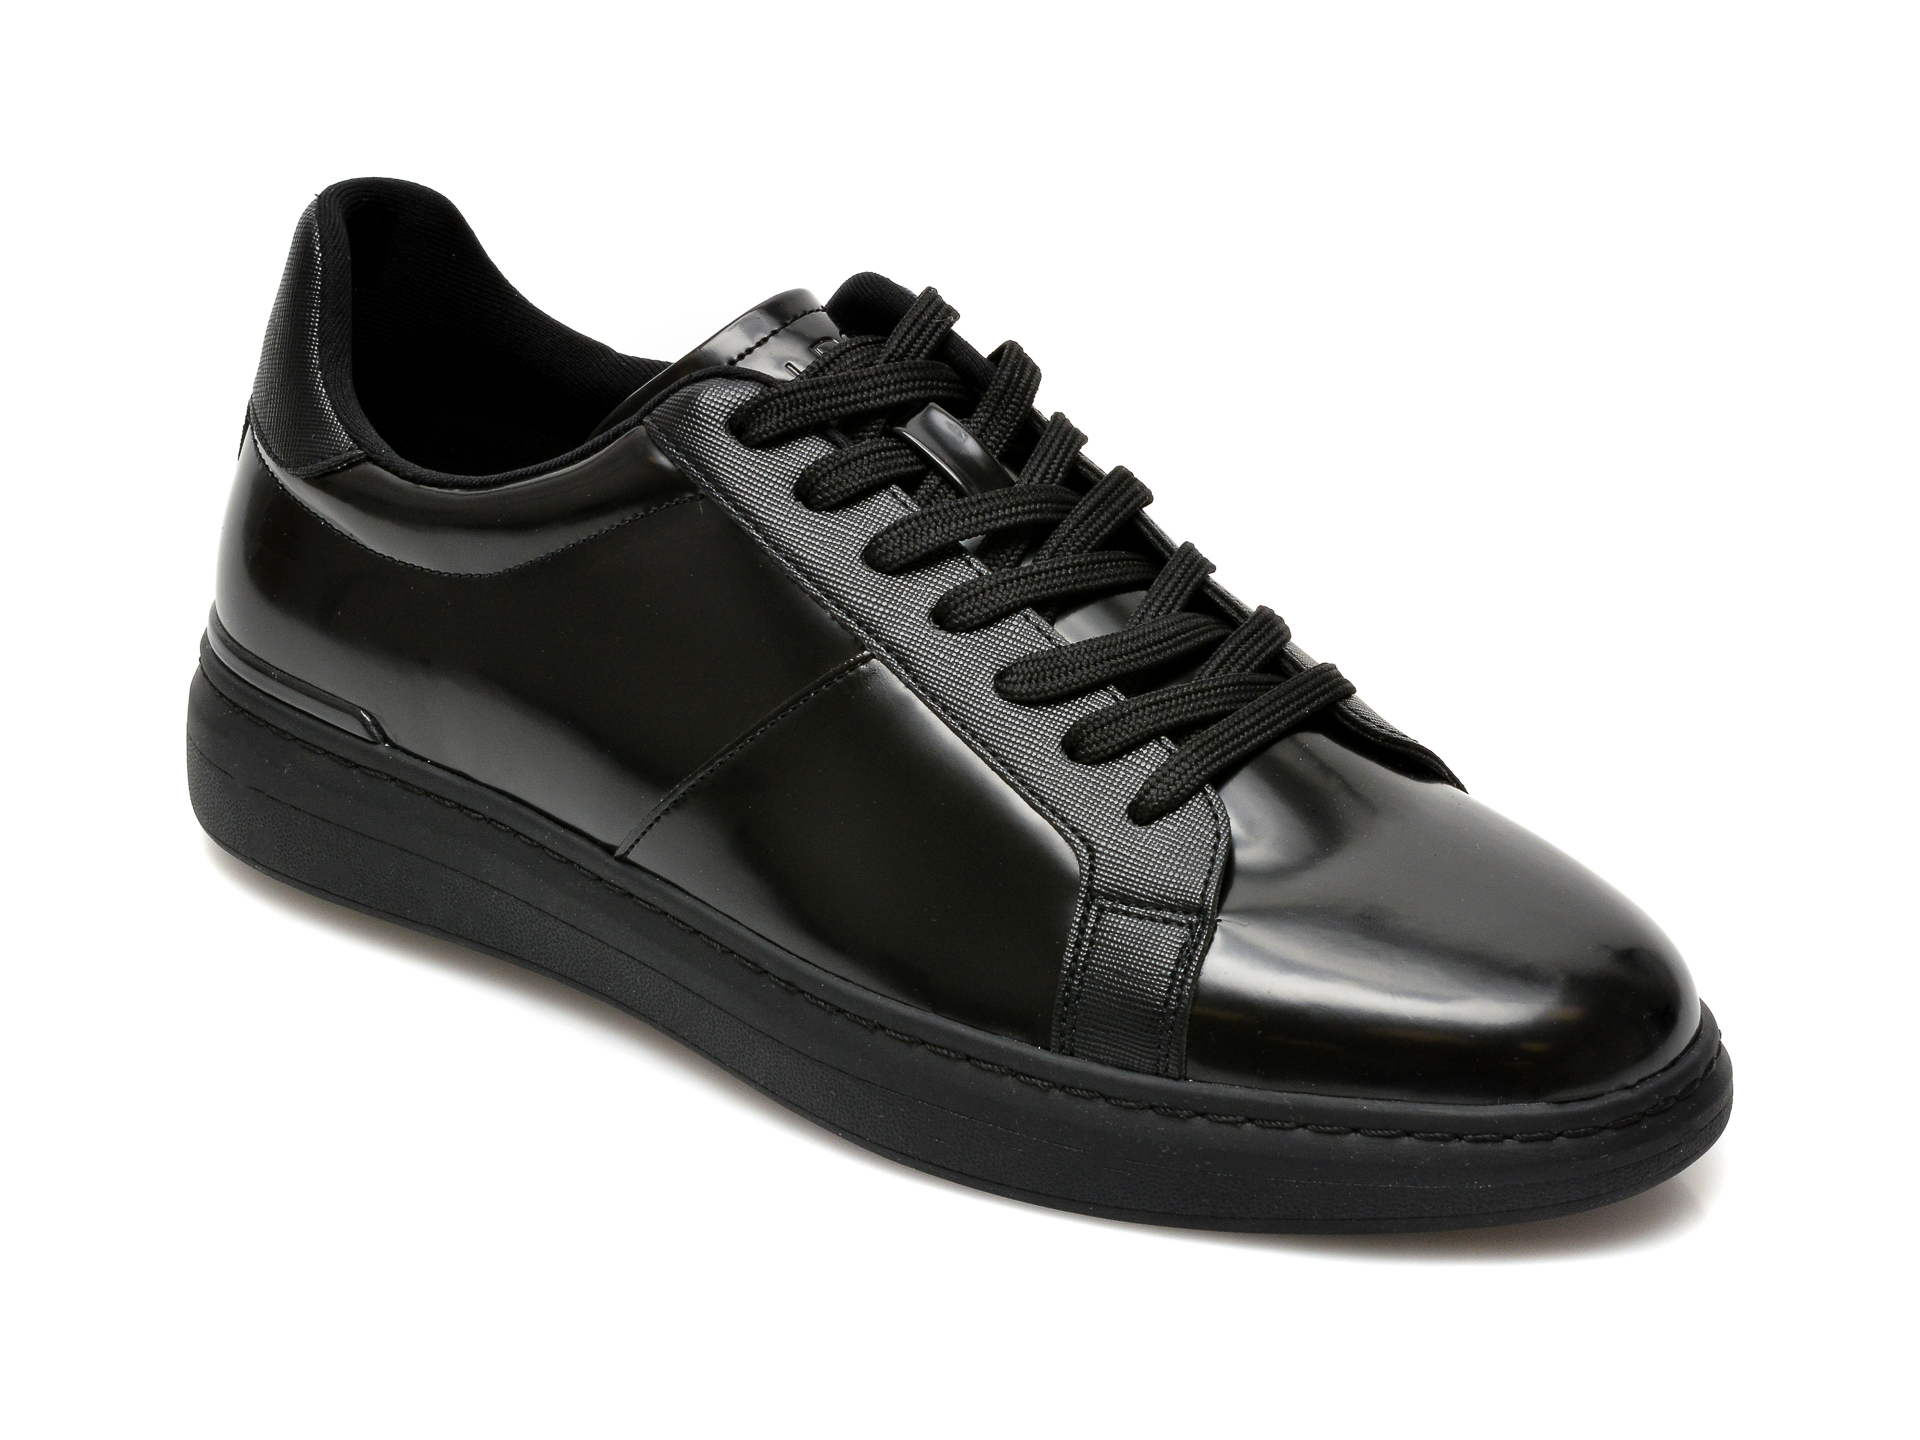 Pantofi ALDO negri, Tosien001, din piele ecologica ALDO imagine 2022